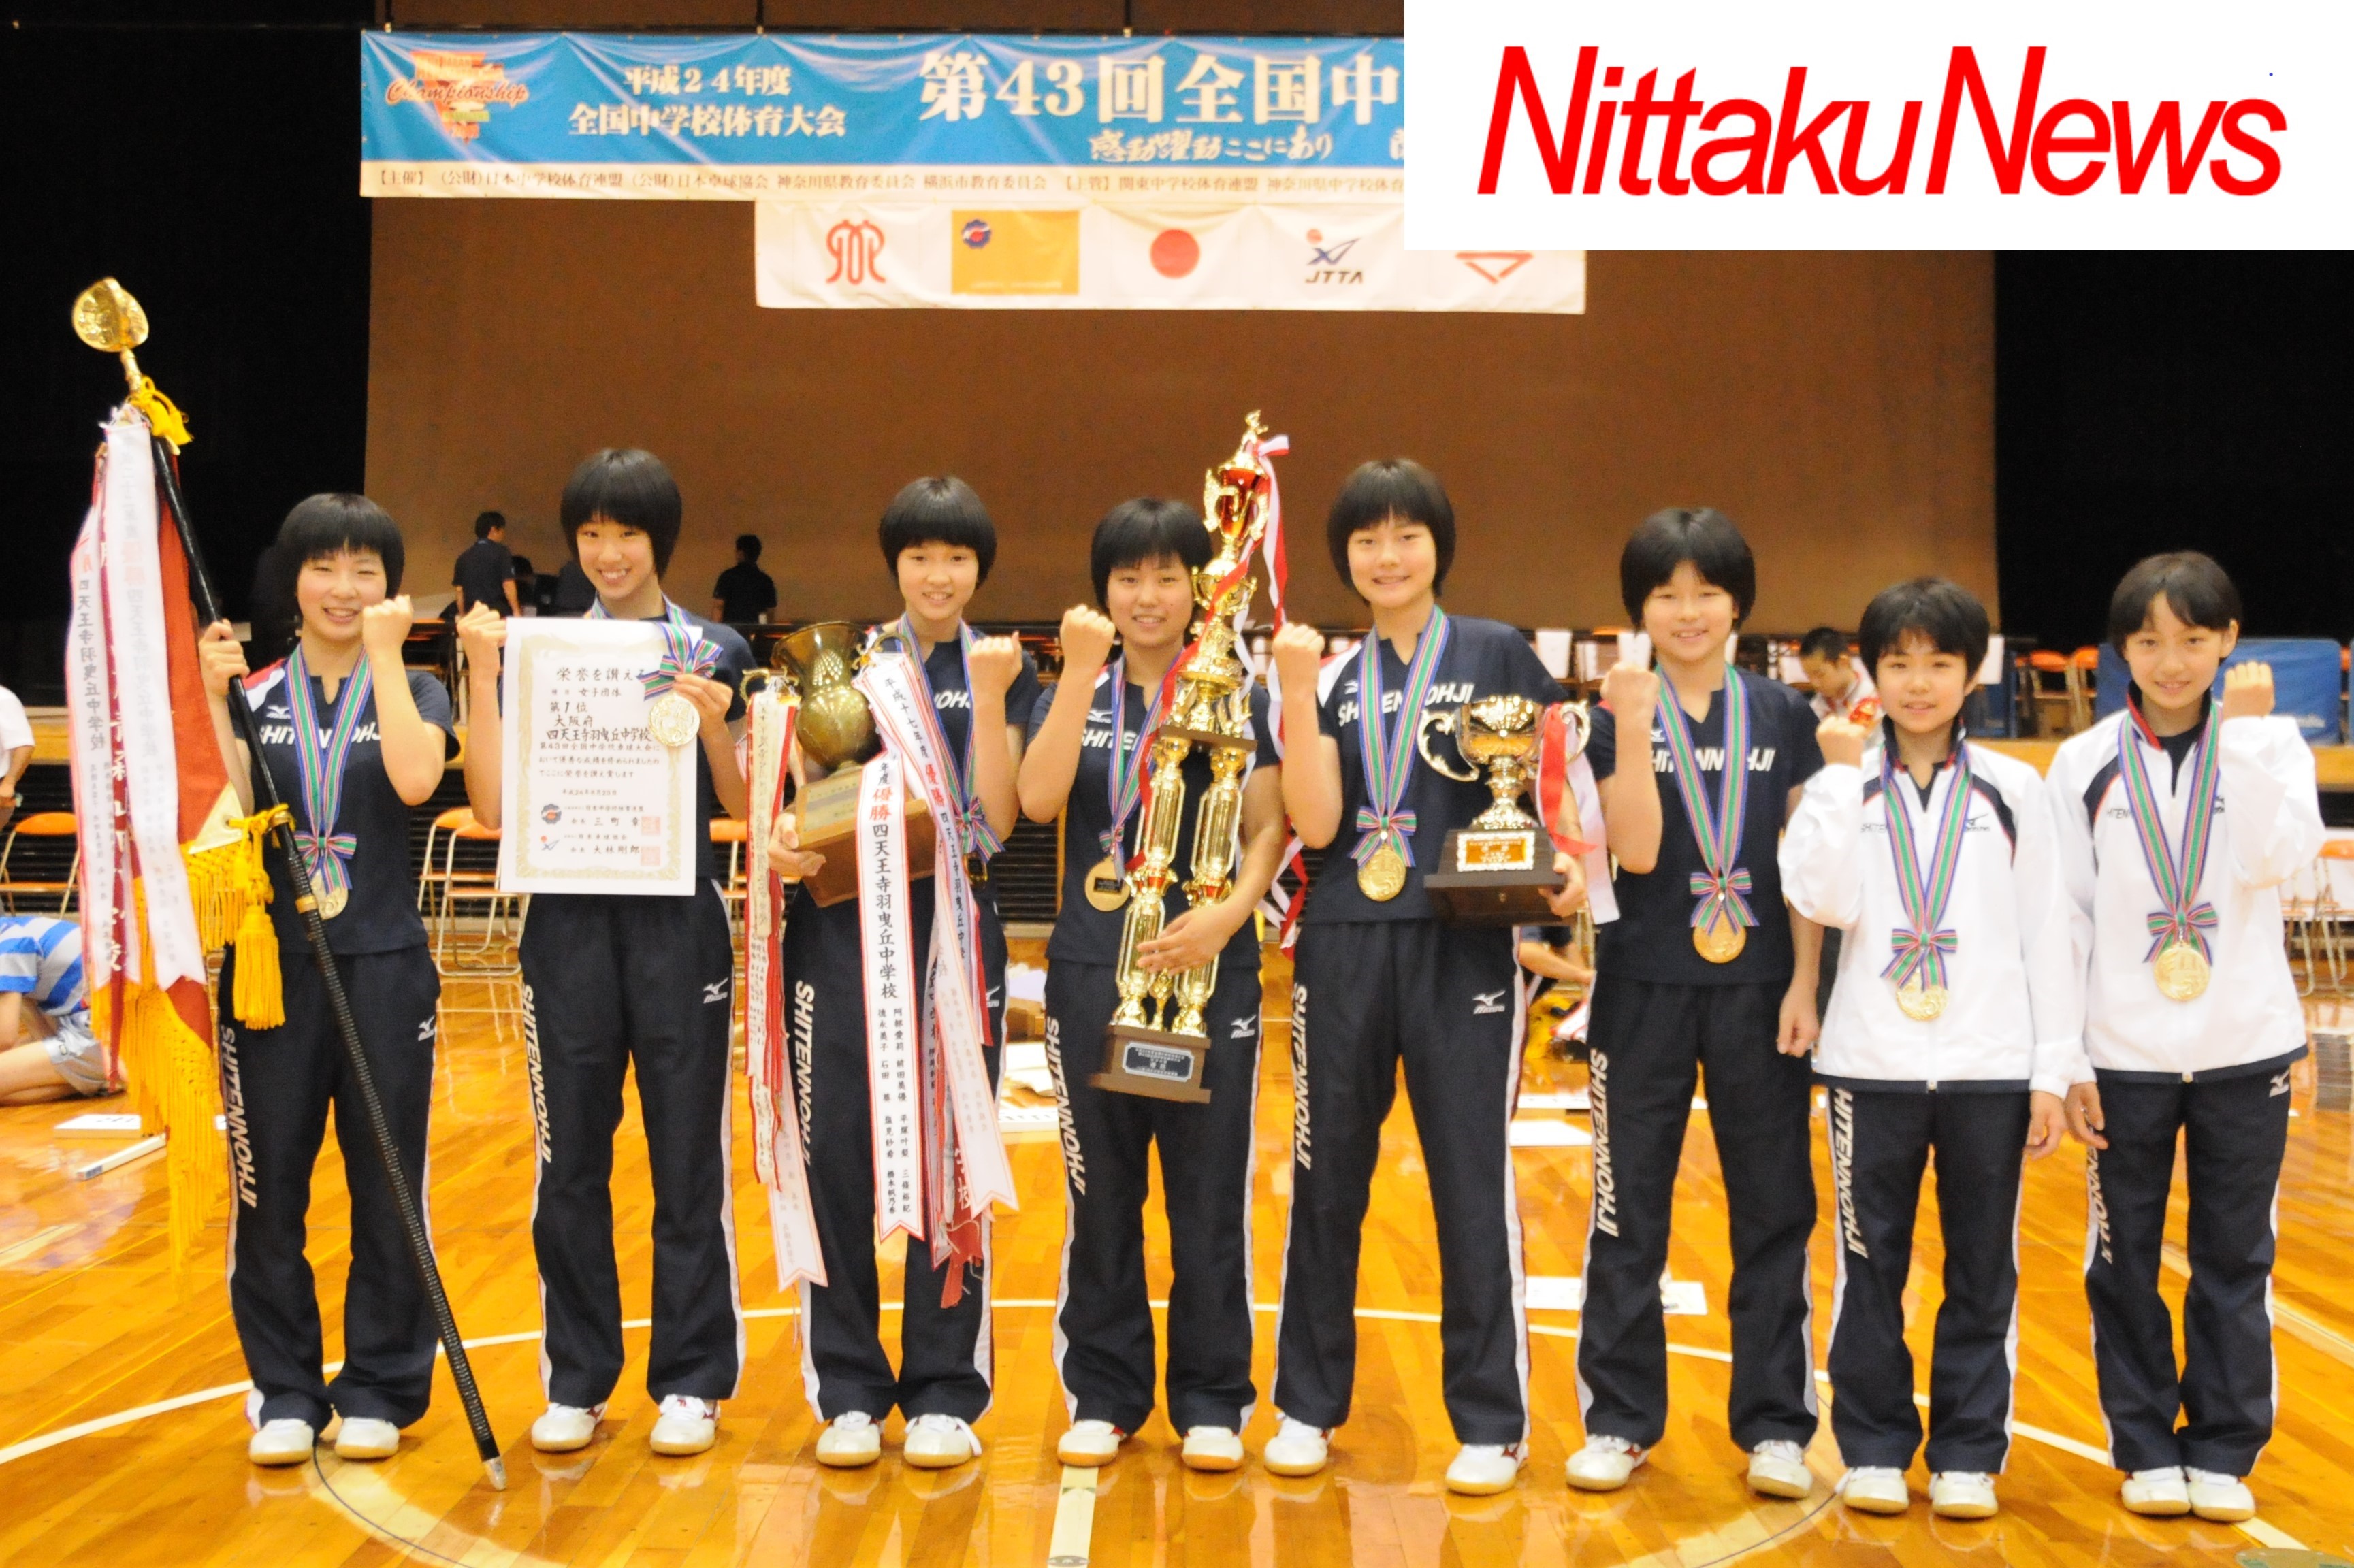 第43回全国中学校大会を振り返る 12年11月号から Nittaku ニッタク 日本卓球 卓球用品の総合用具メーカーnittaku ニッタク 日本卓球株式会社の公式ホームページ